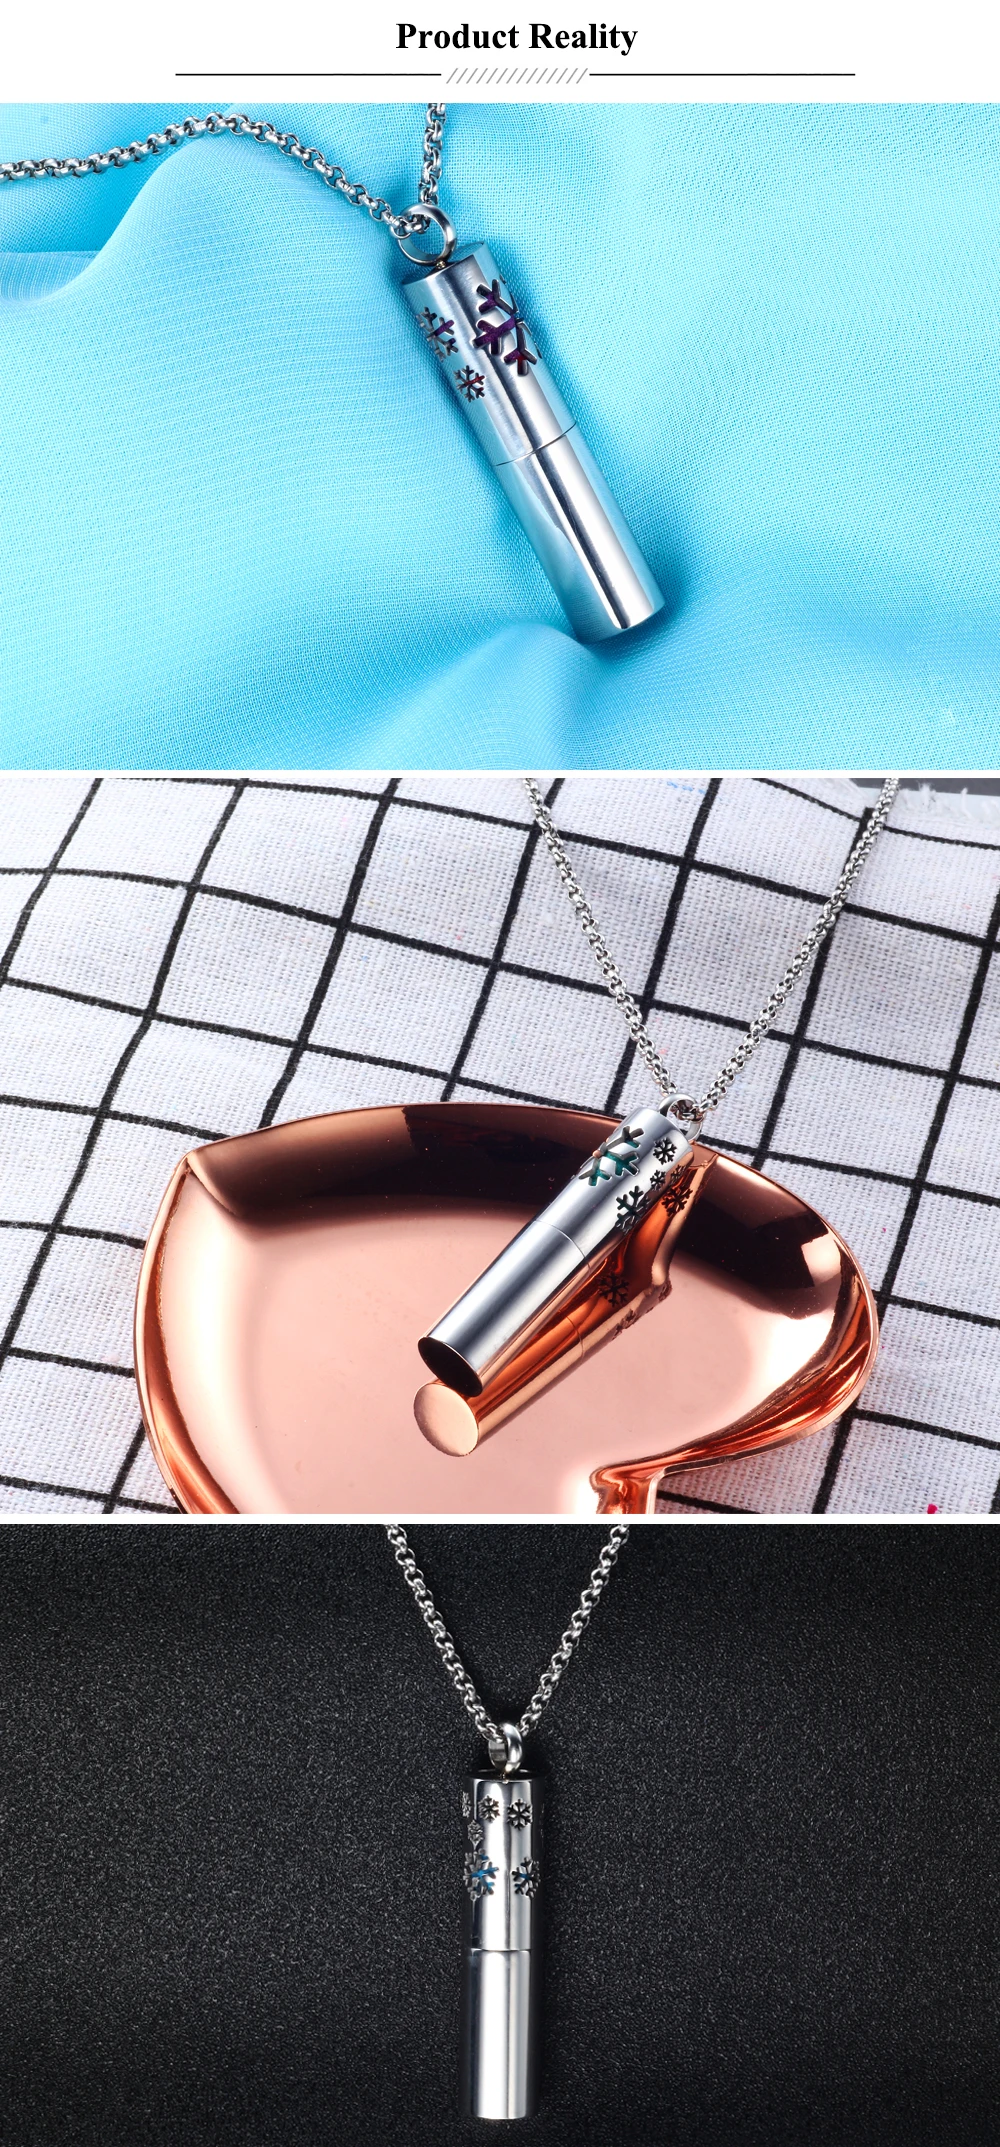 Ubelive 316L нержавеющая сталь Винтаж ароматерапия парфюмерные эфирные масла диффузор ожерелье хранения медальон серебряный кулон